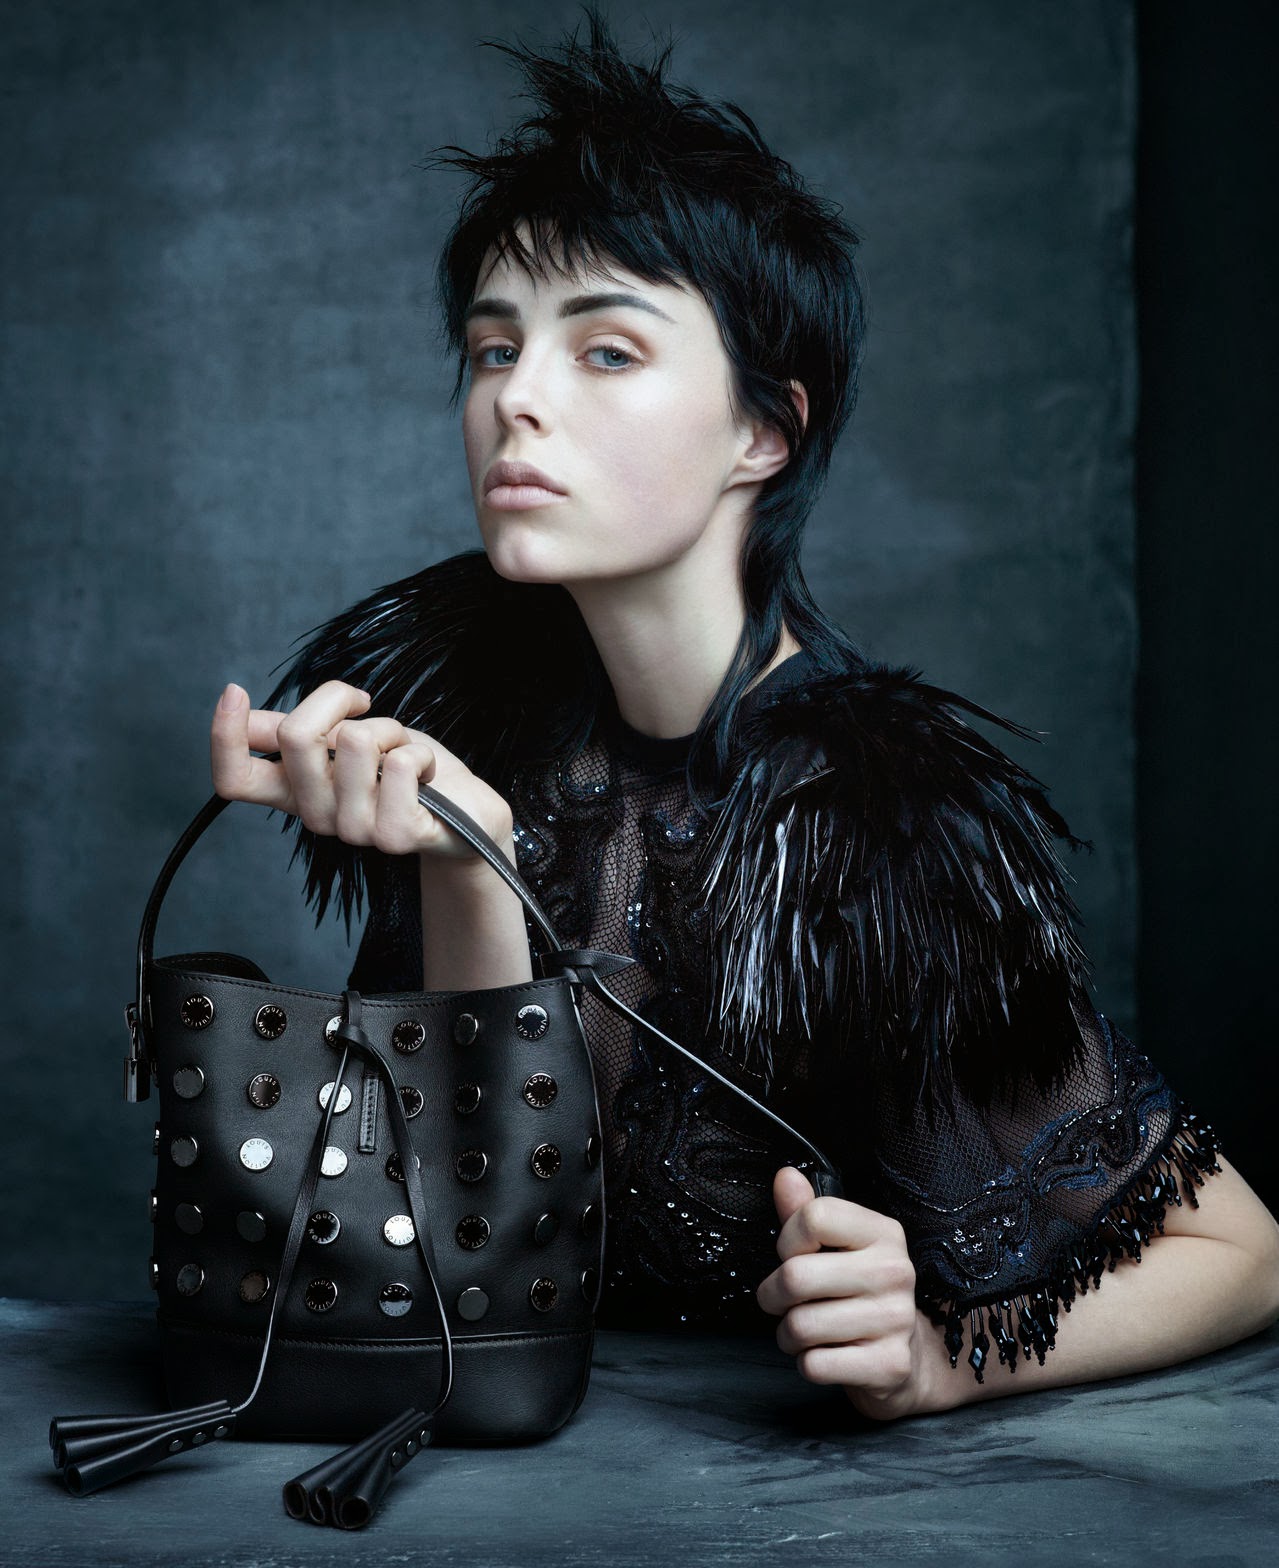 Gisele Bündchen Stars in Louis Vuitton Campaign